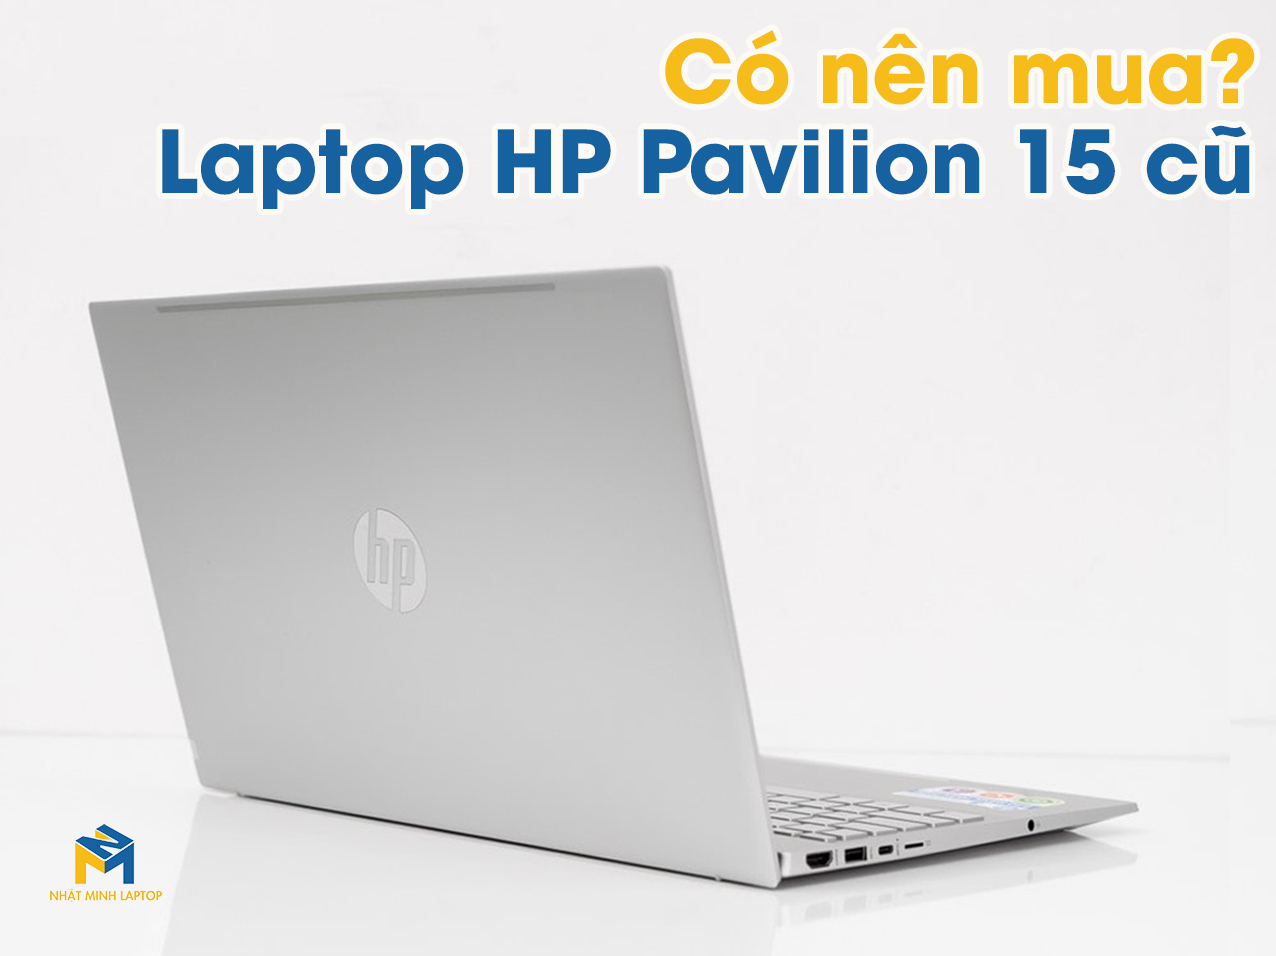 Laptop HP Pavilion 15 cũ có nên mua hay không?